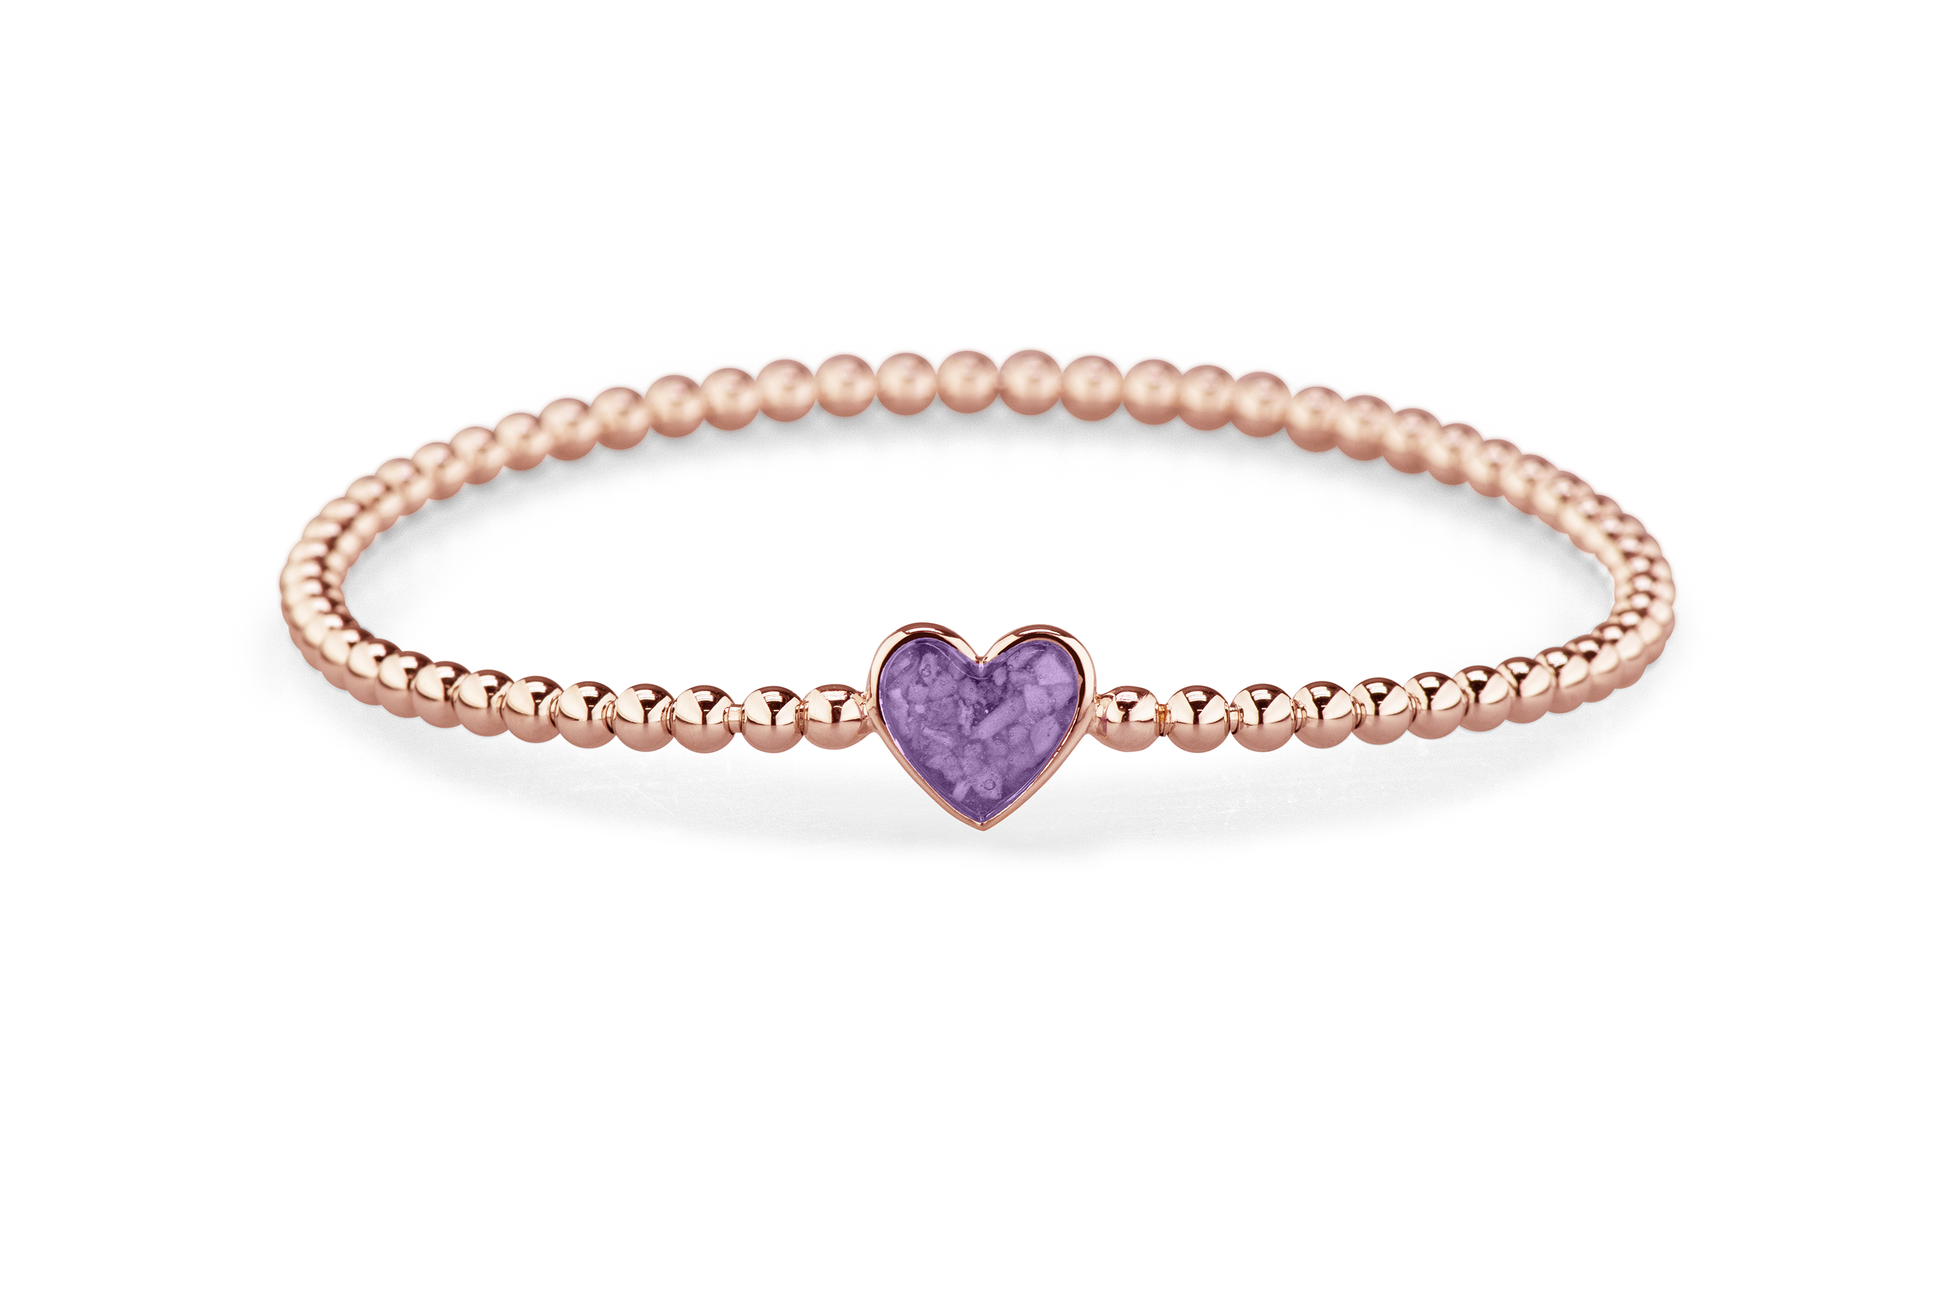 Flexibele as armband met hart als compartiment voor as of haar, gedenksieraden. Purple